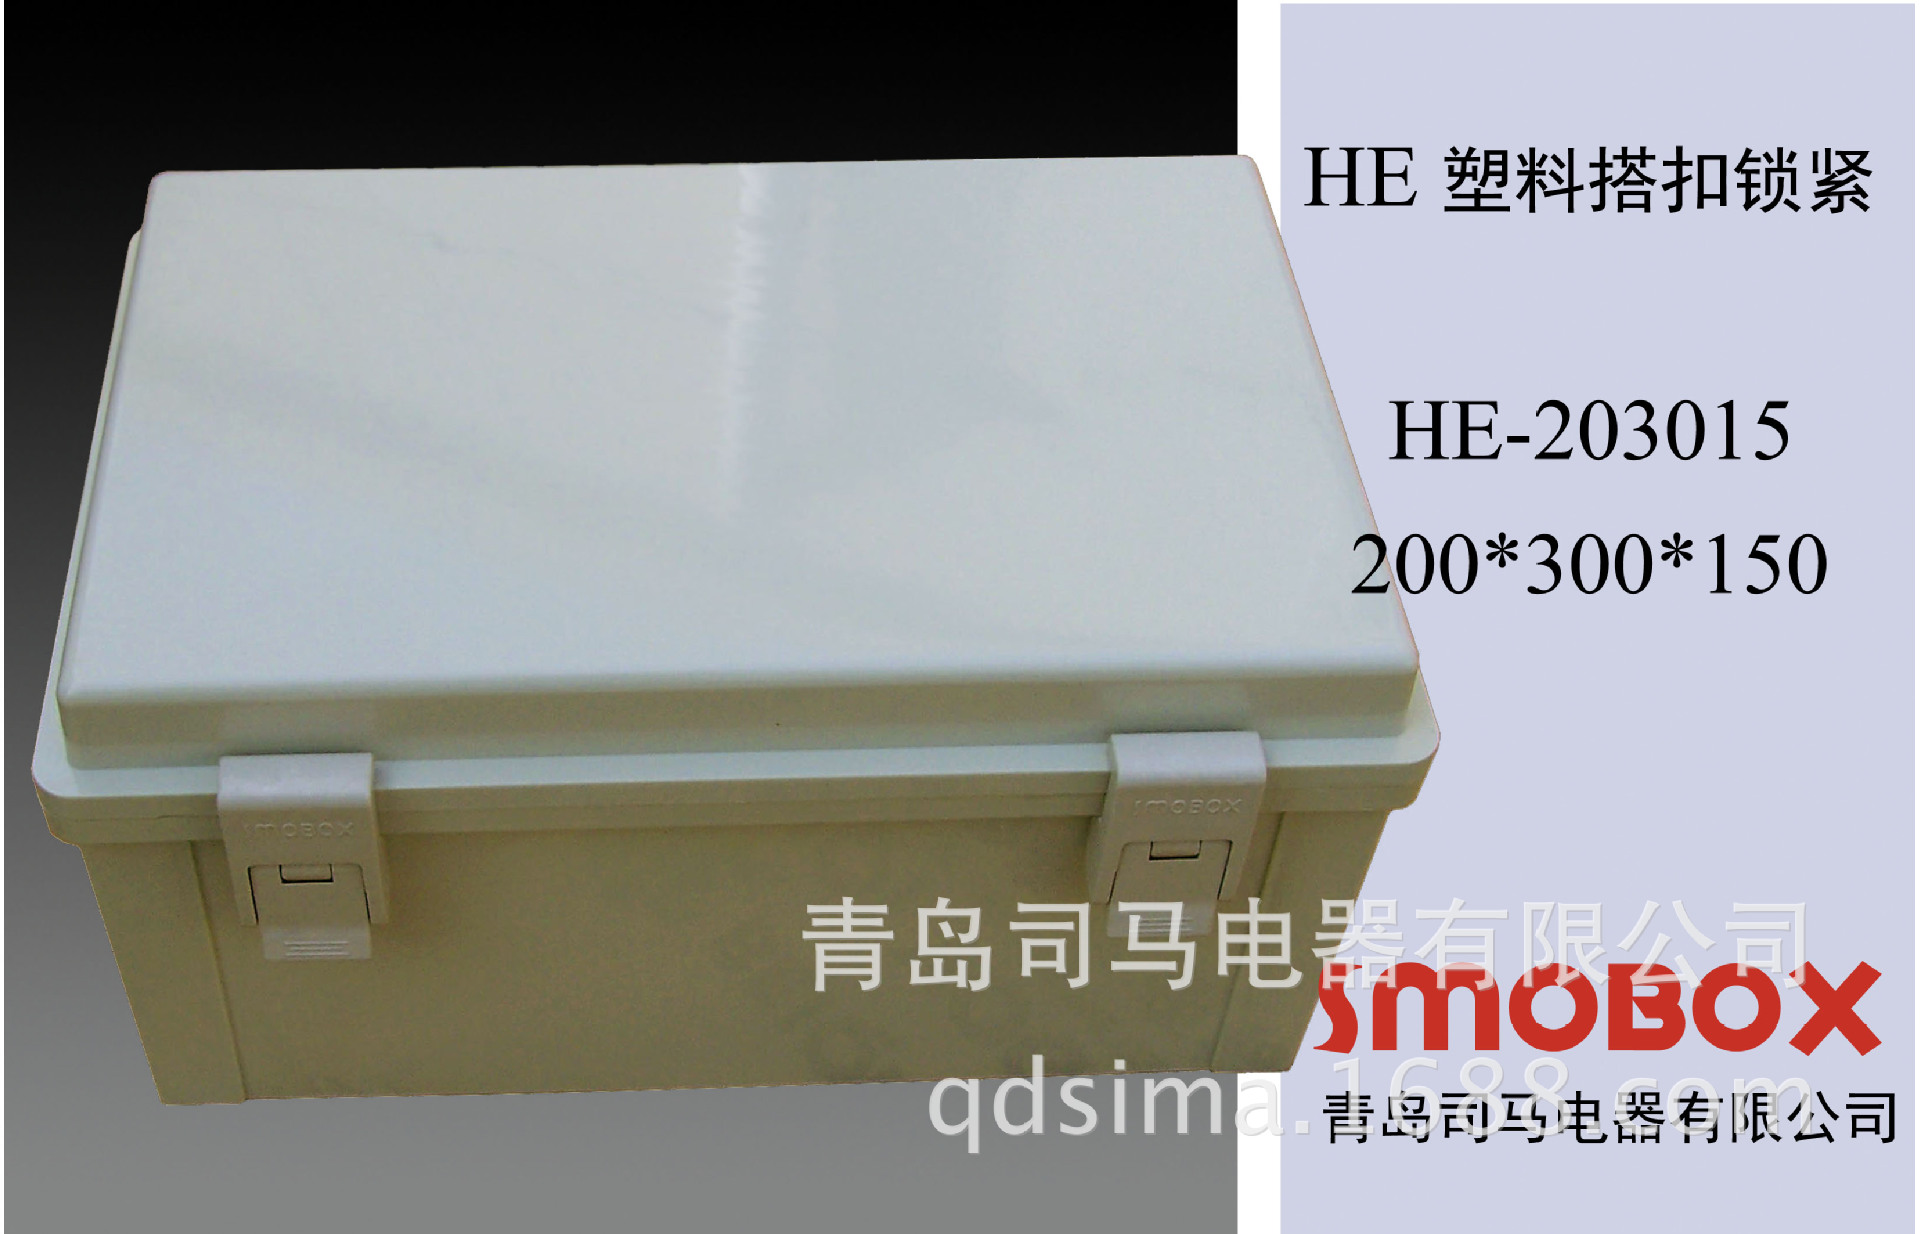 200*300*150侧开门防水电控箱专业雕刻机开孔各配件齐全防水盒示例图7